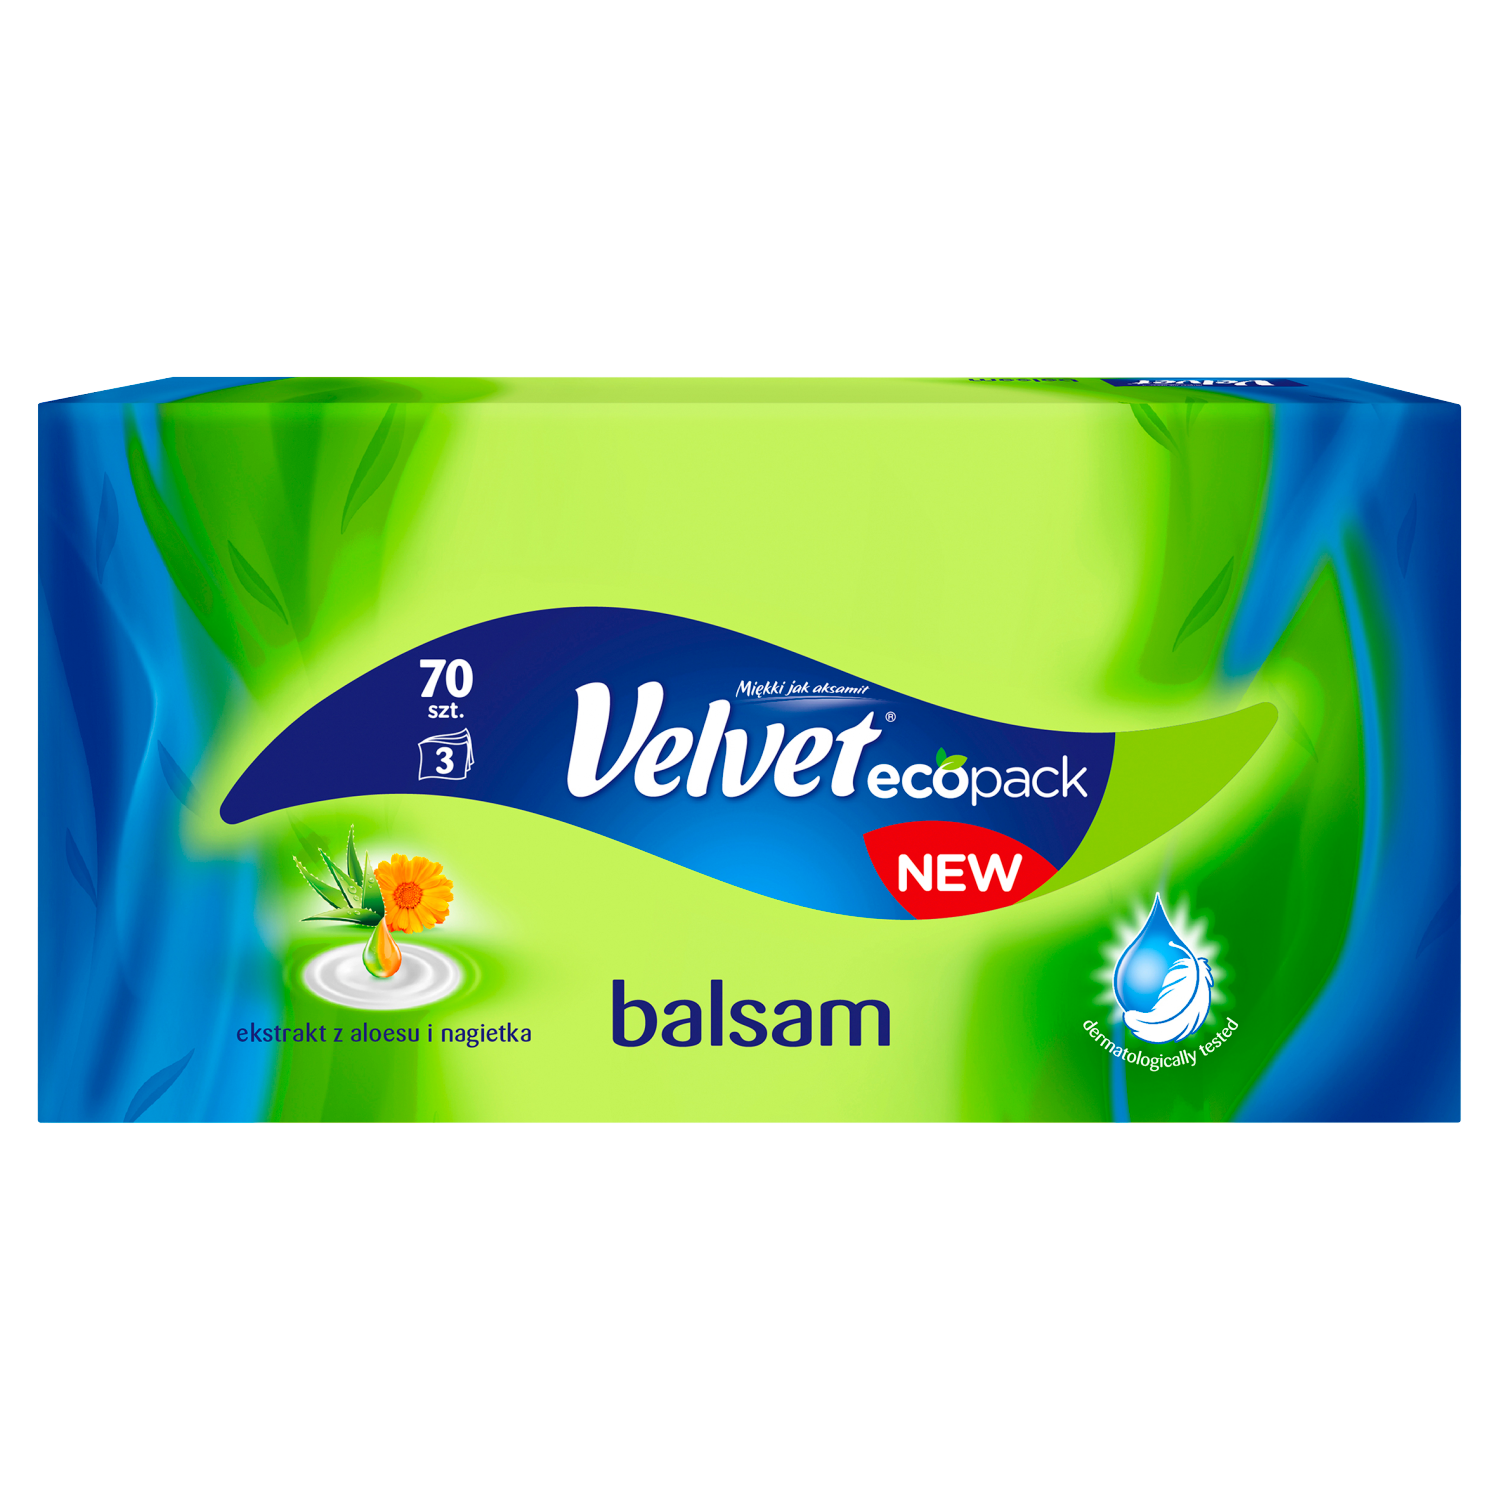 Velvet Balsam салфетки, 70 шт., 1 упаковка